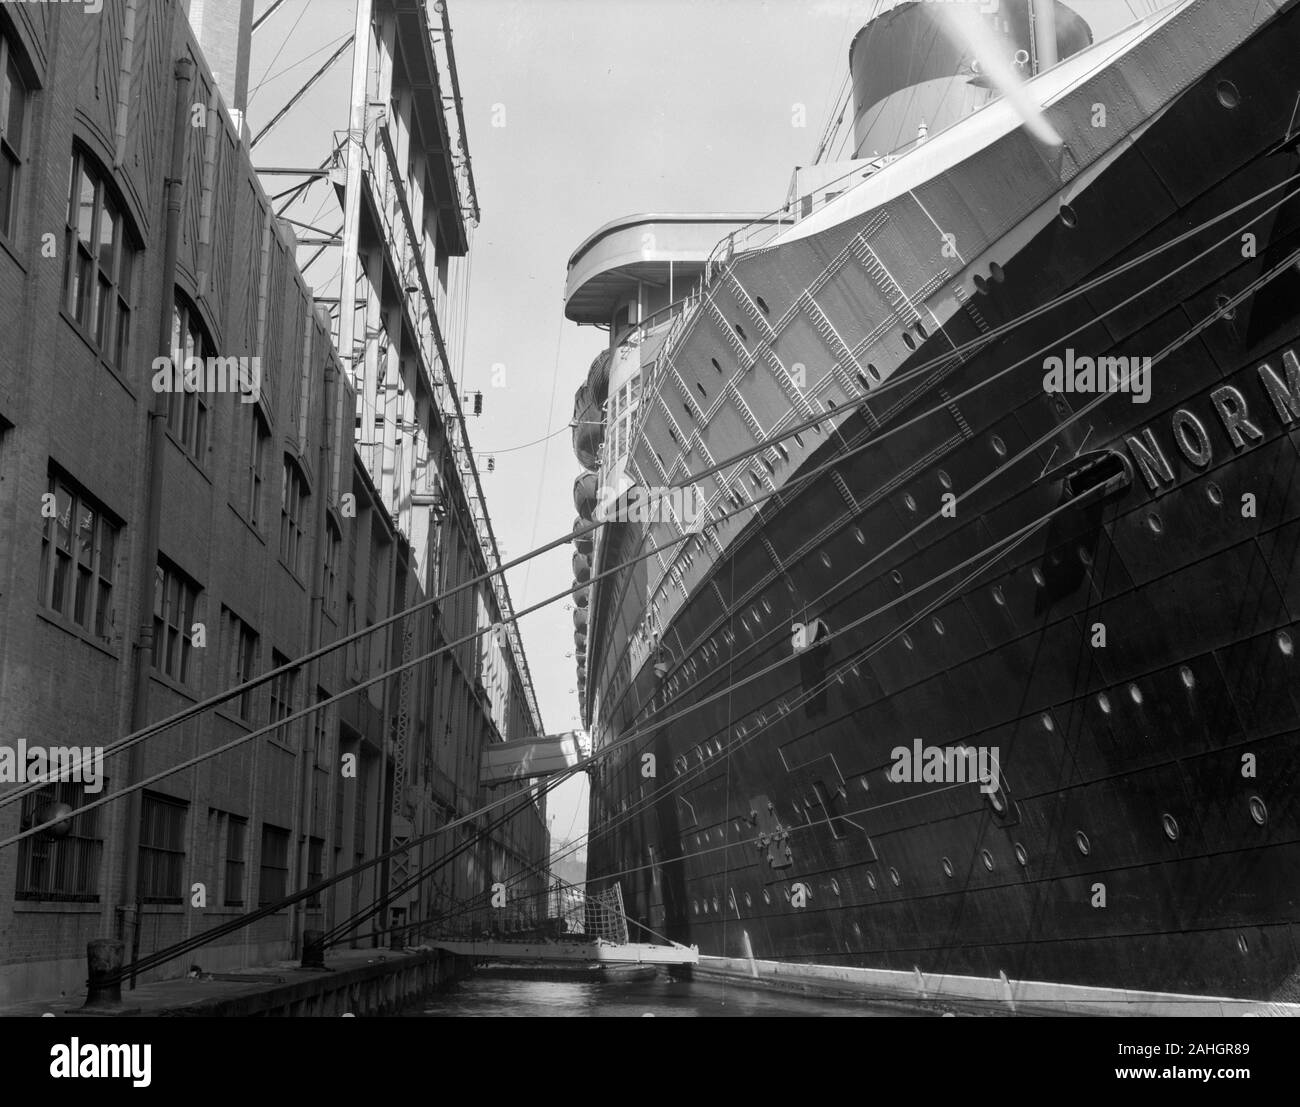 Die SS Normandie, am Dock in New York, während der Prozess der wieder eingebaut wird, als Truppentransporter im Zweiten Weltkrieg zu dienen. Das Datum des Fotos ist ungewiss, aber es ist eindeutig vor das Feuer, das das Schiff im Februar 1942 belagert Stockfoto